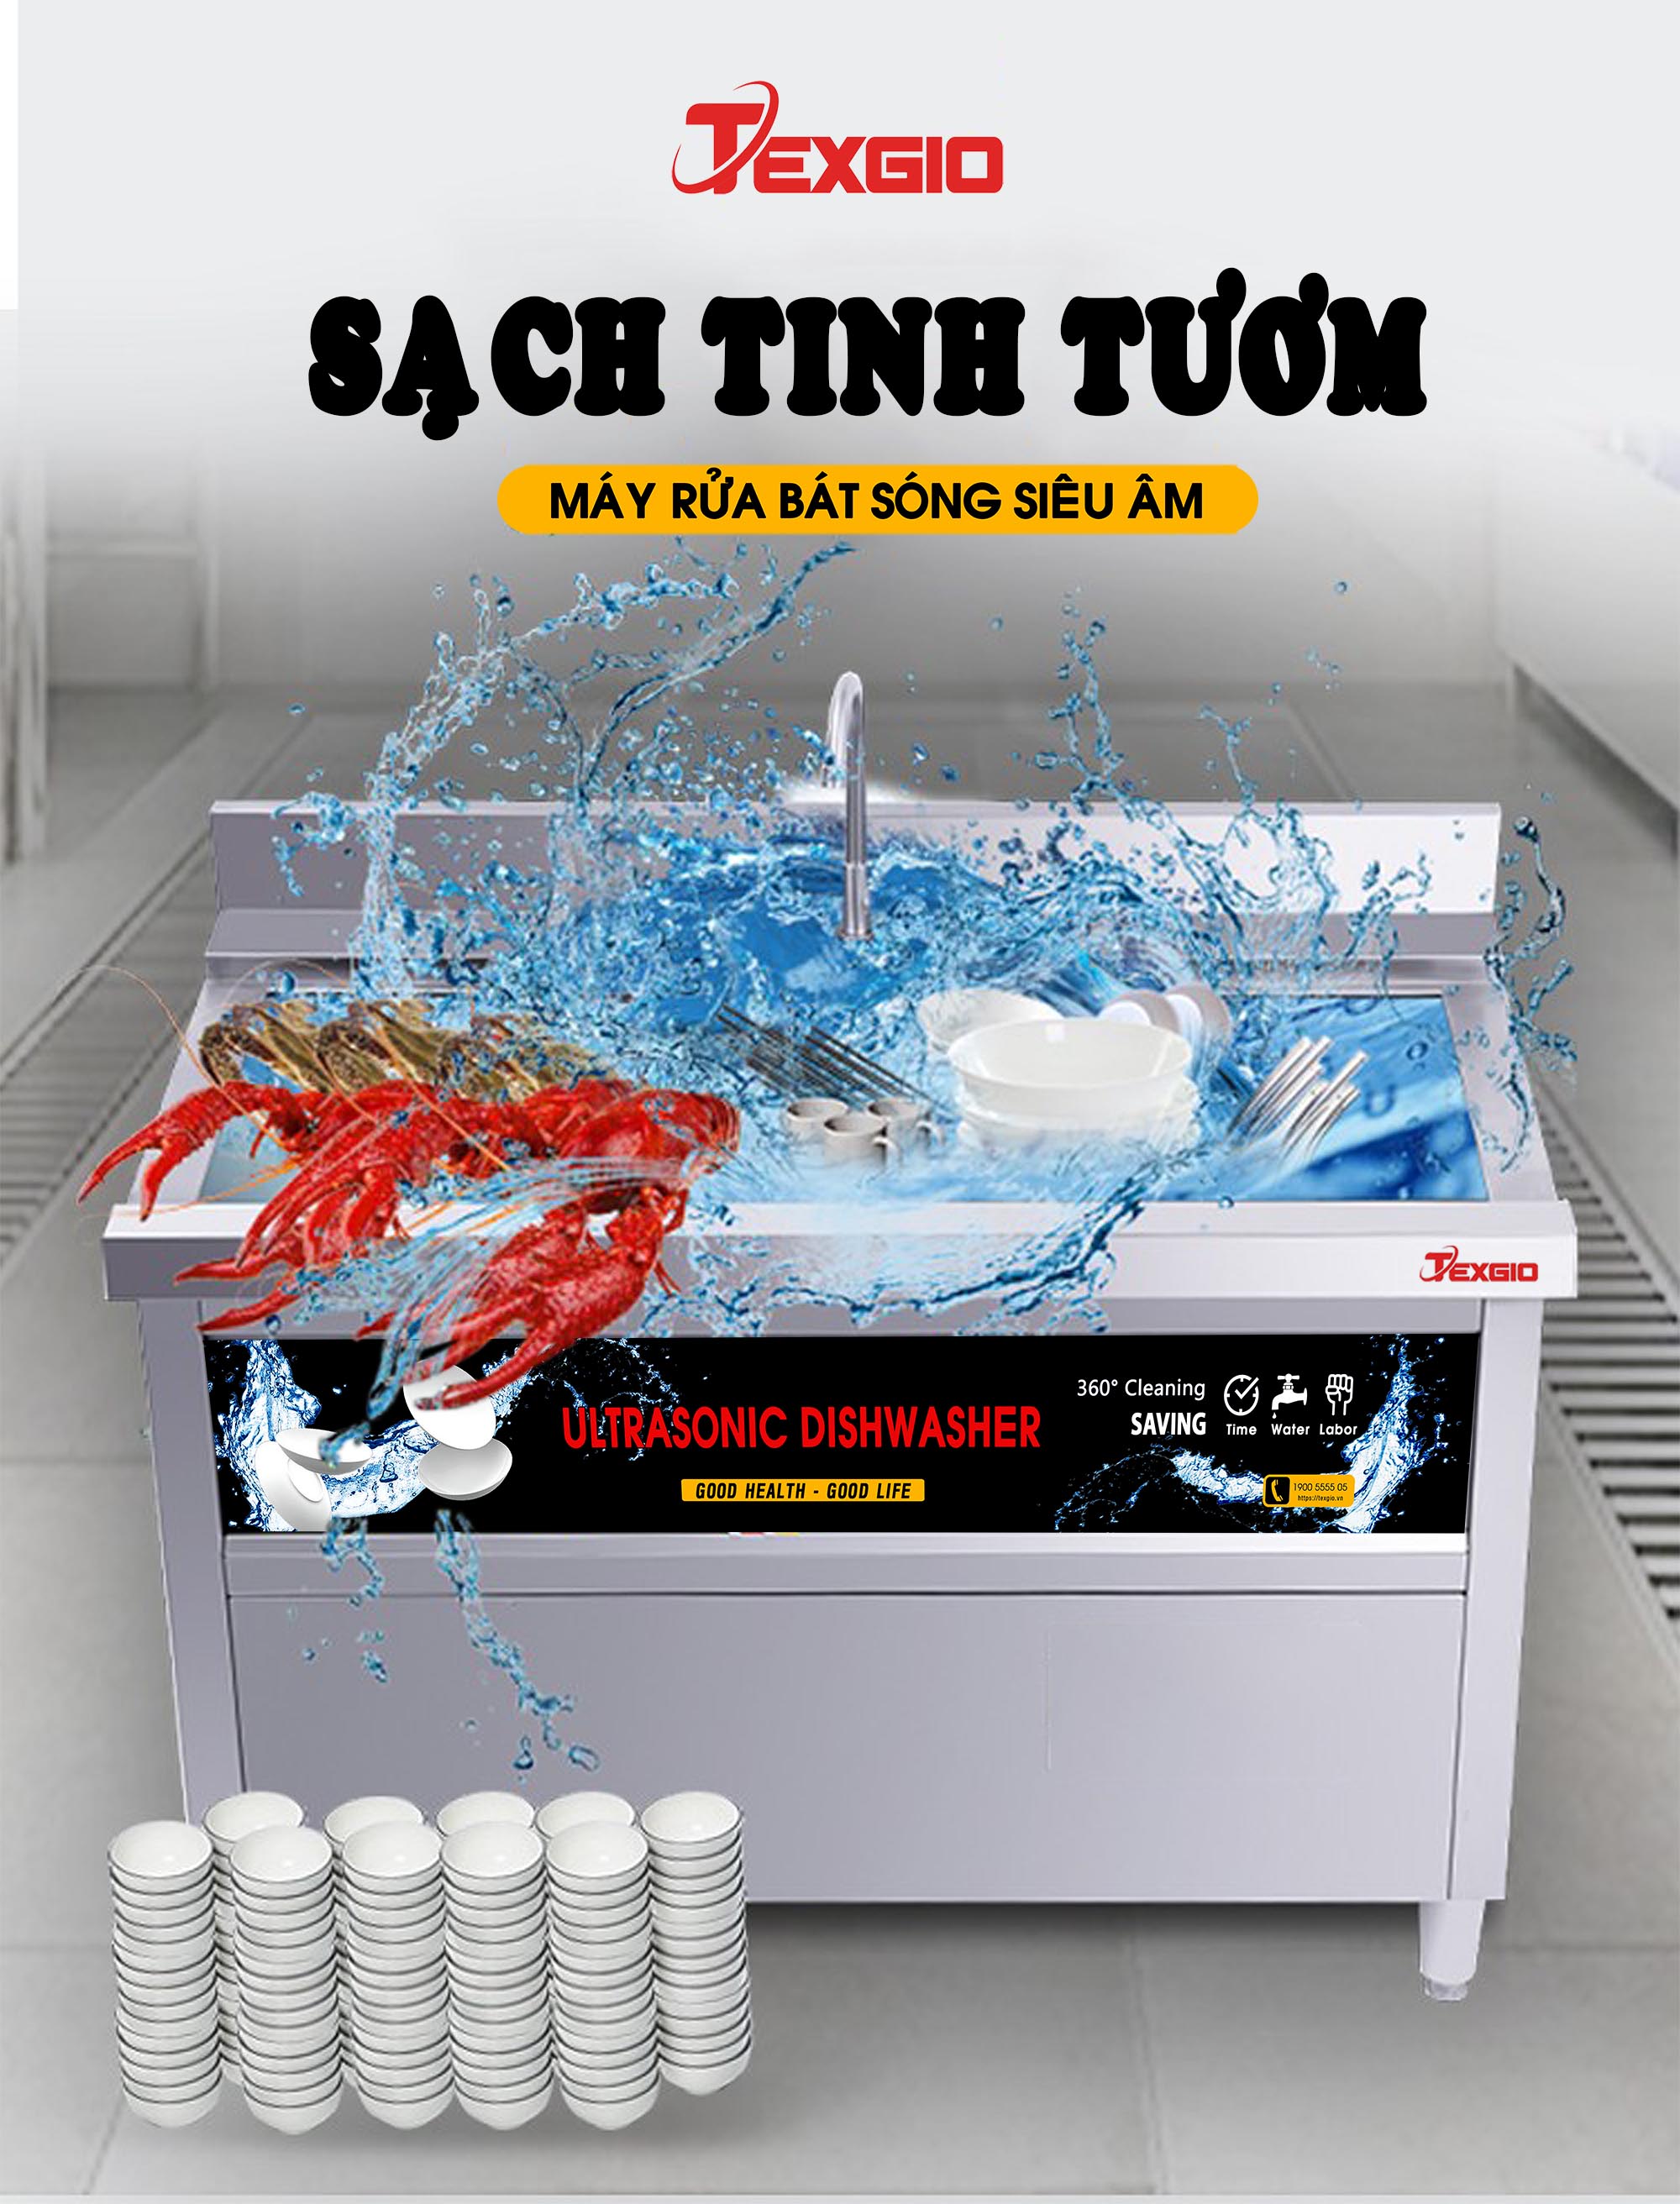 sach20tinh20tuom - Máy Công Nghiệp UltraSonic Texgio Luxury TGU-1500HS